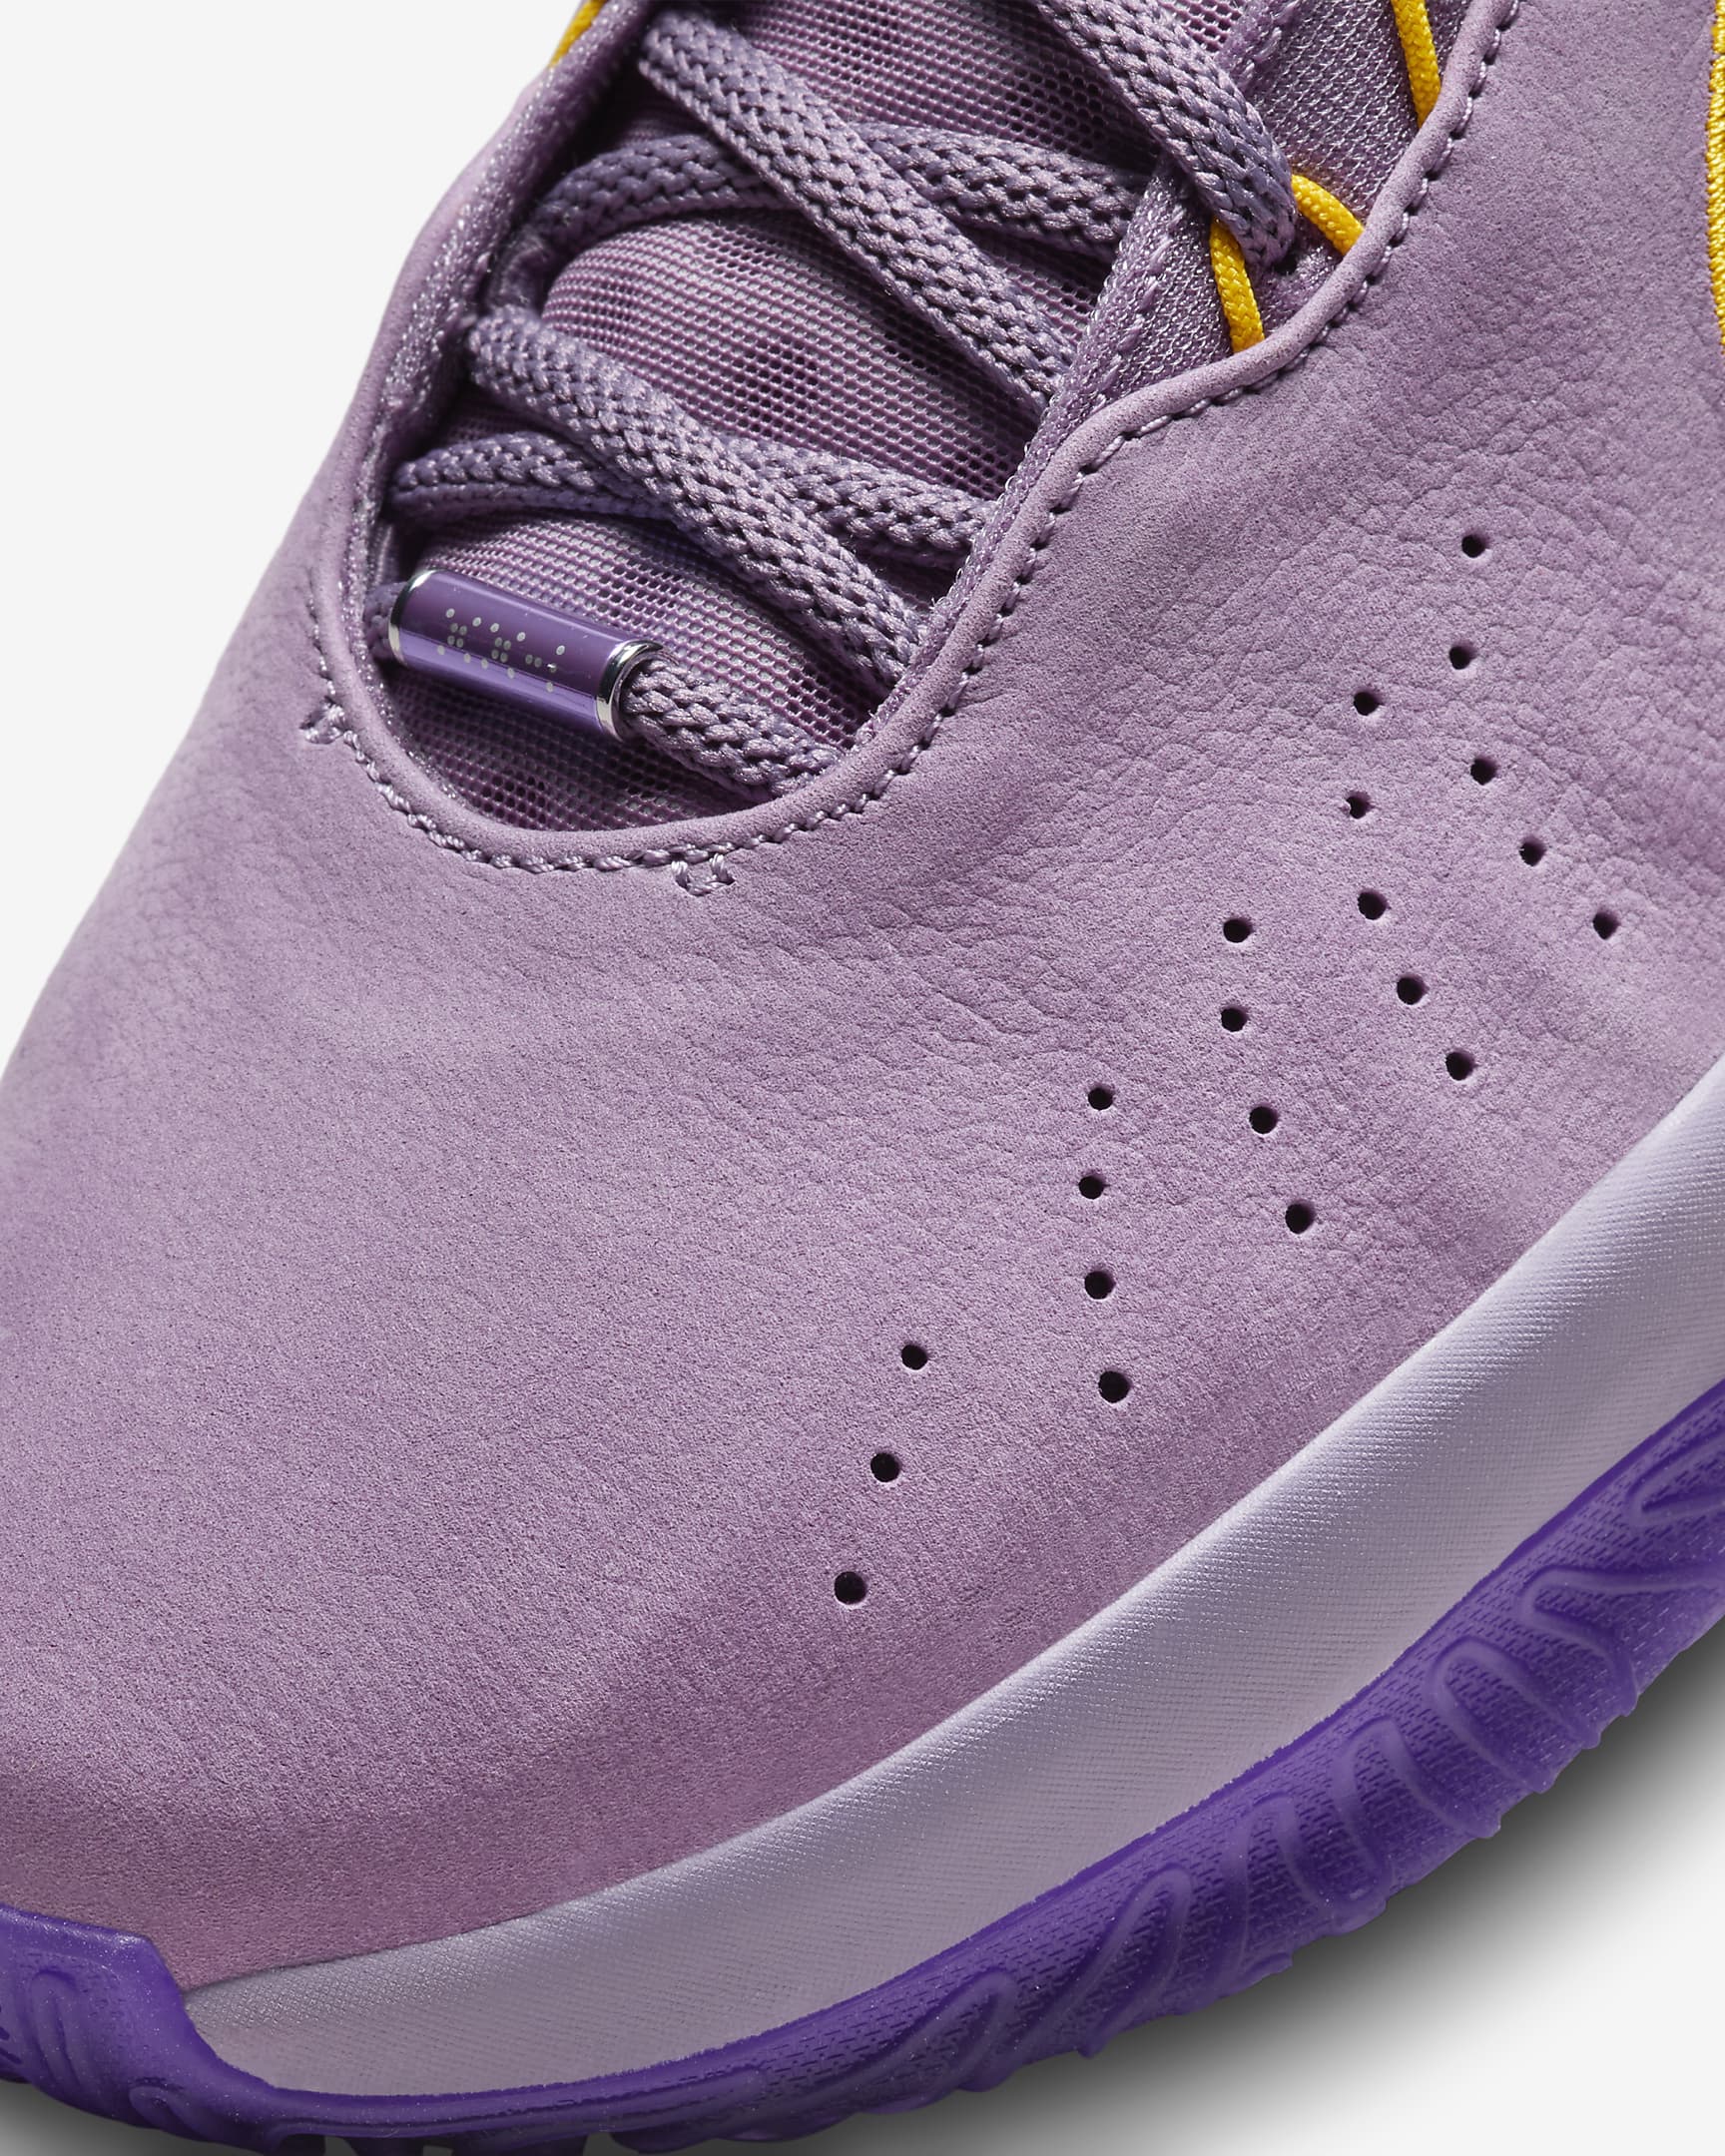 LeBron XXI 'Freshwater' Basketball Shoes. Nike CA